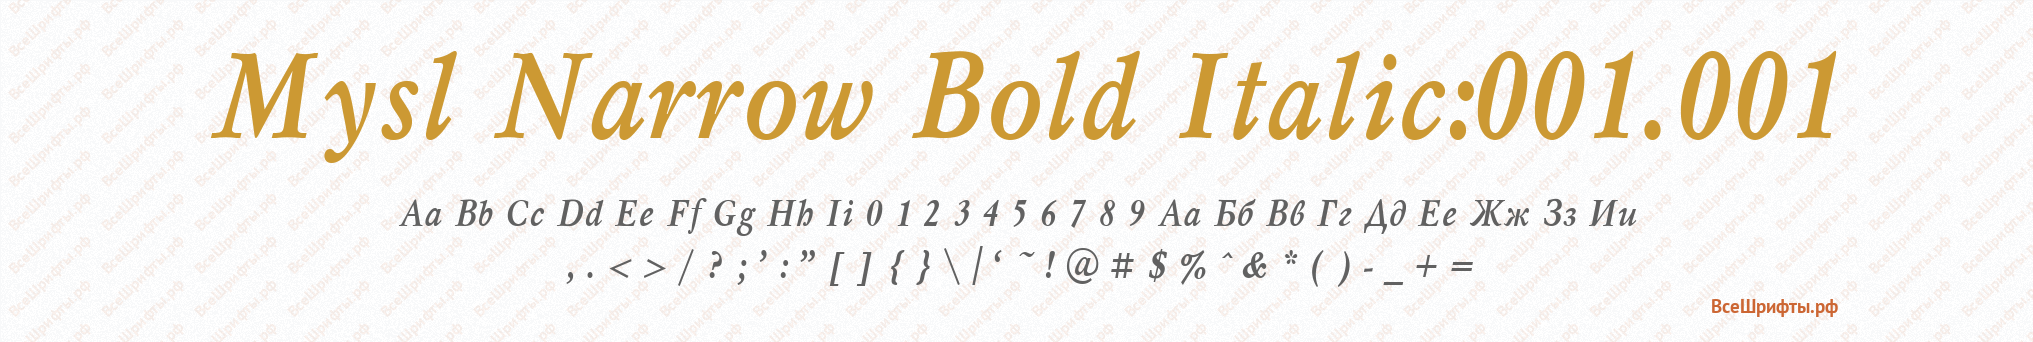 Шрифт Mysl Narrow Bold Italic:001.001